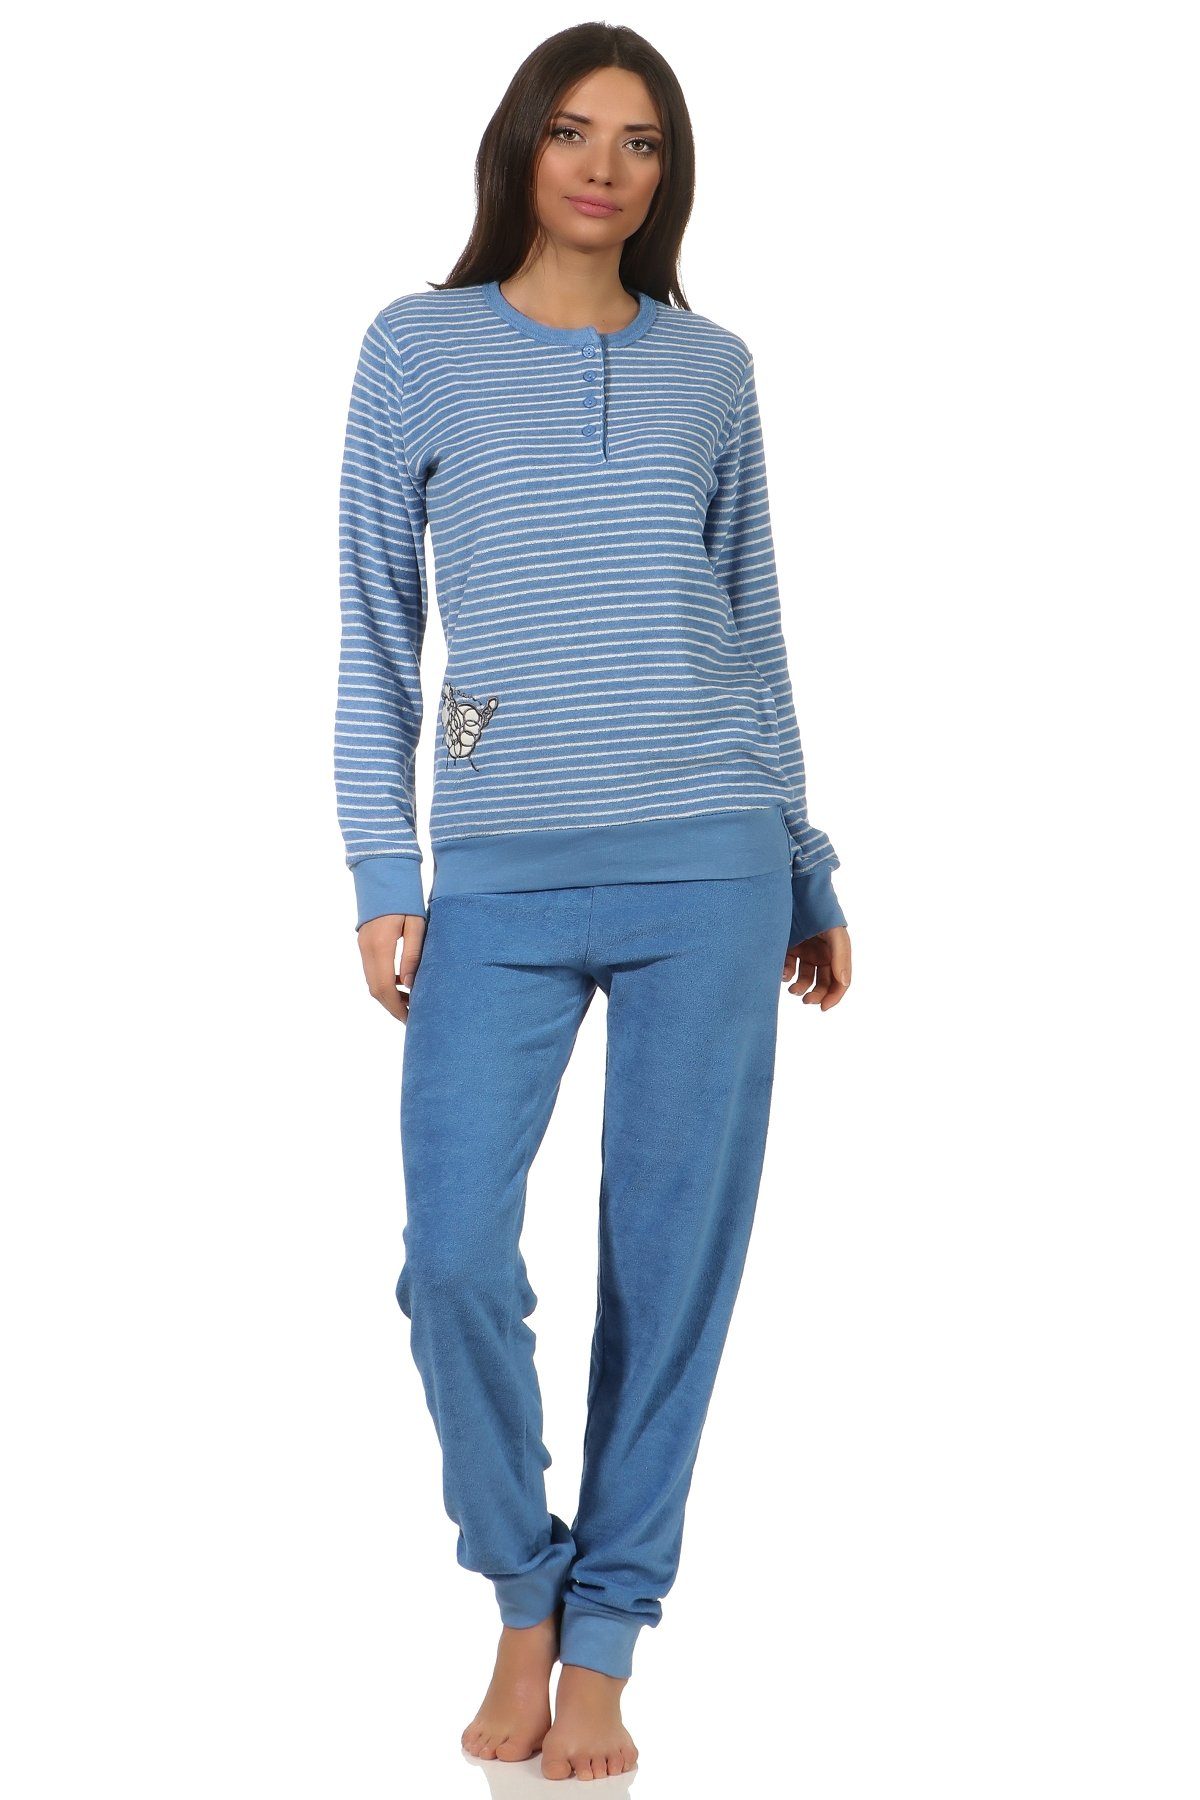 und Frottee Pyjama Applikation Schlafanzug Tier süsser Bündchen mit hellblau Damen Normann